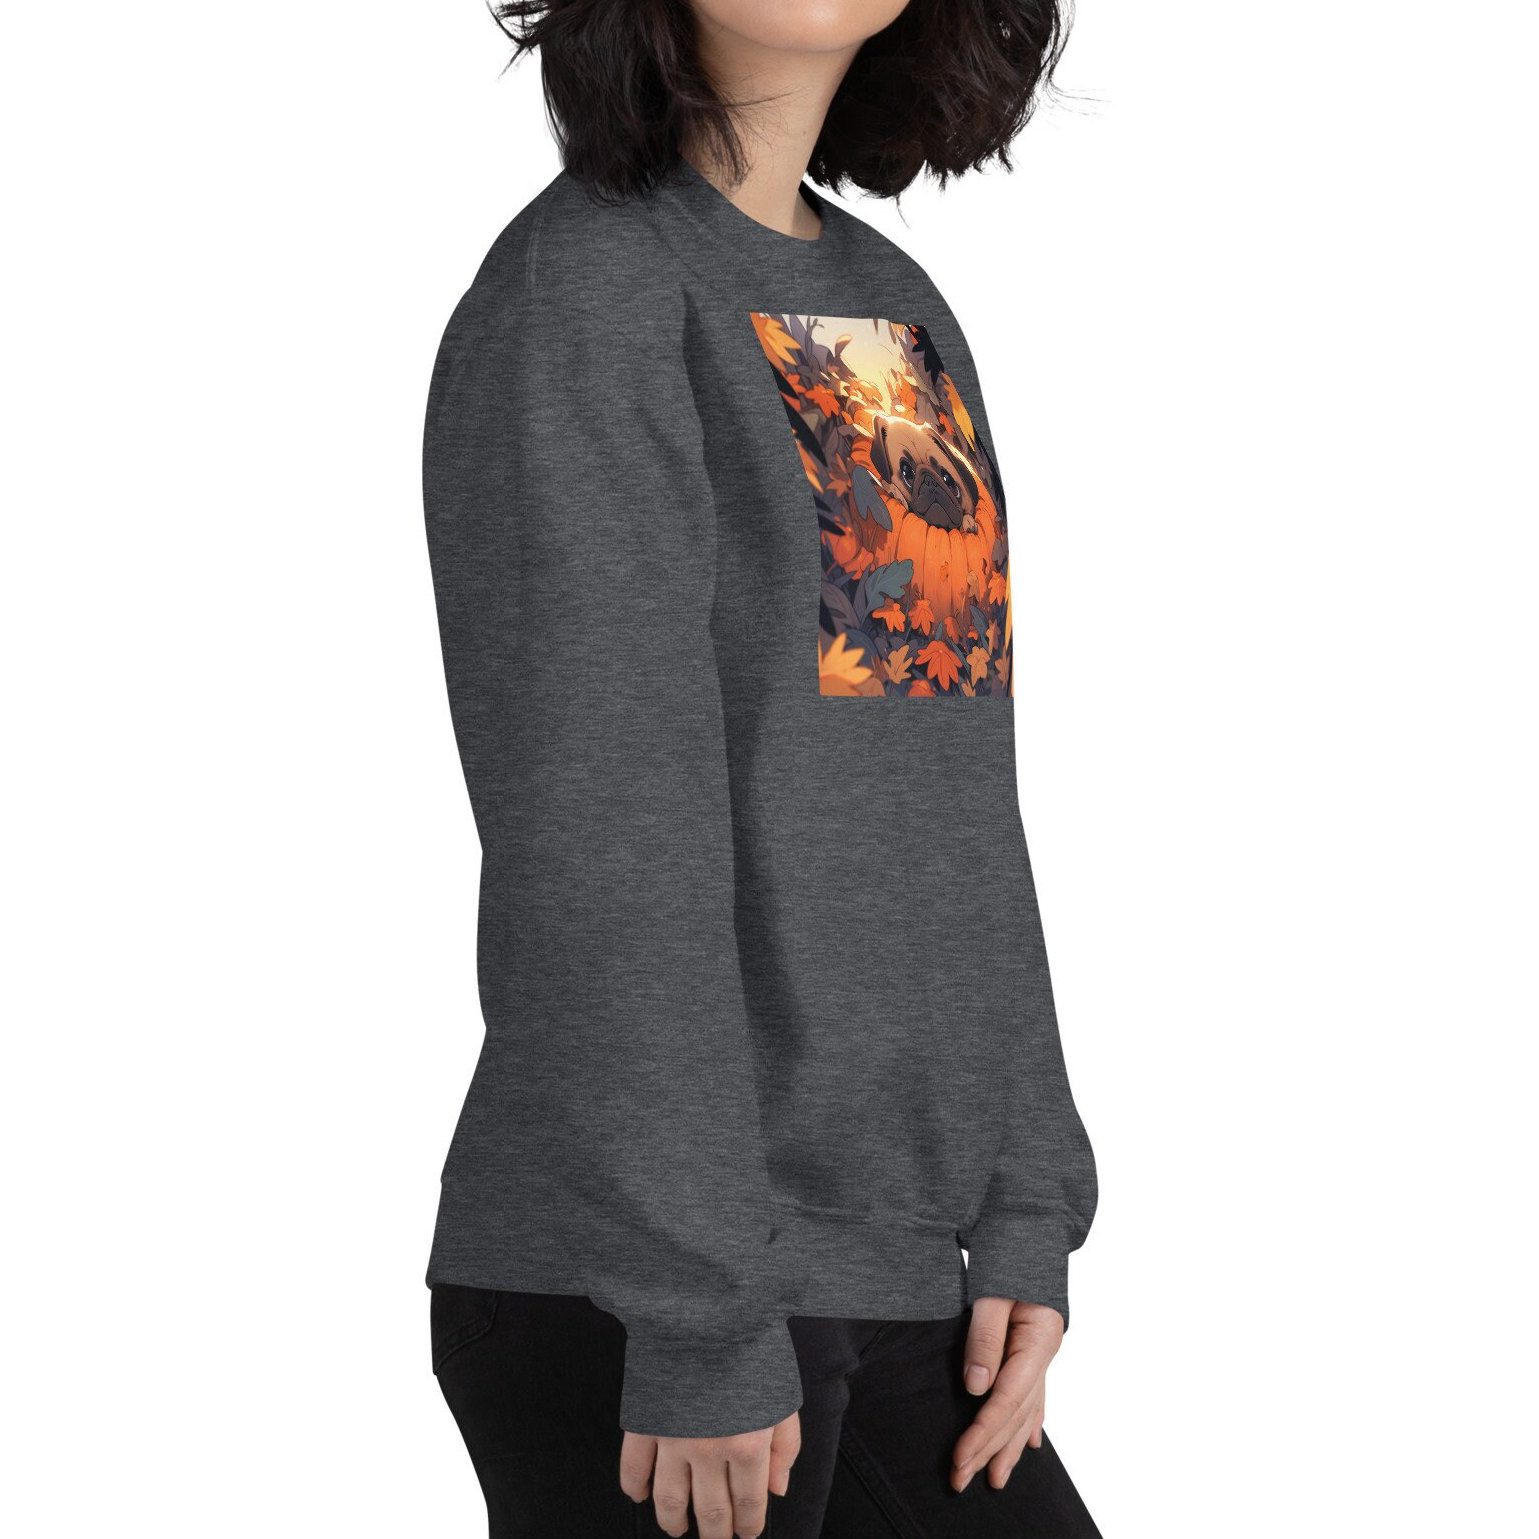 Discover Pug in a Pumpkin Spooky Halloween Dog Sweatshirt, Kawaii Anime Mini Pug Halloween Shirt, Pumpkin Spice, Dog Dad Mom, Spooky Vibe Sweatshirt